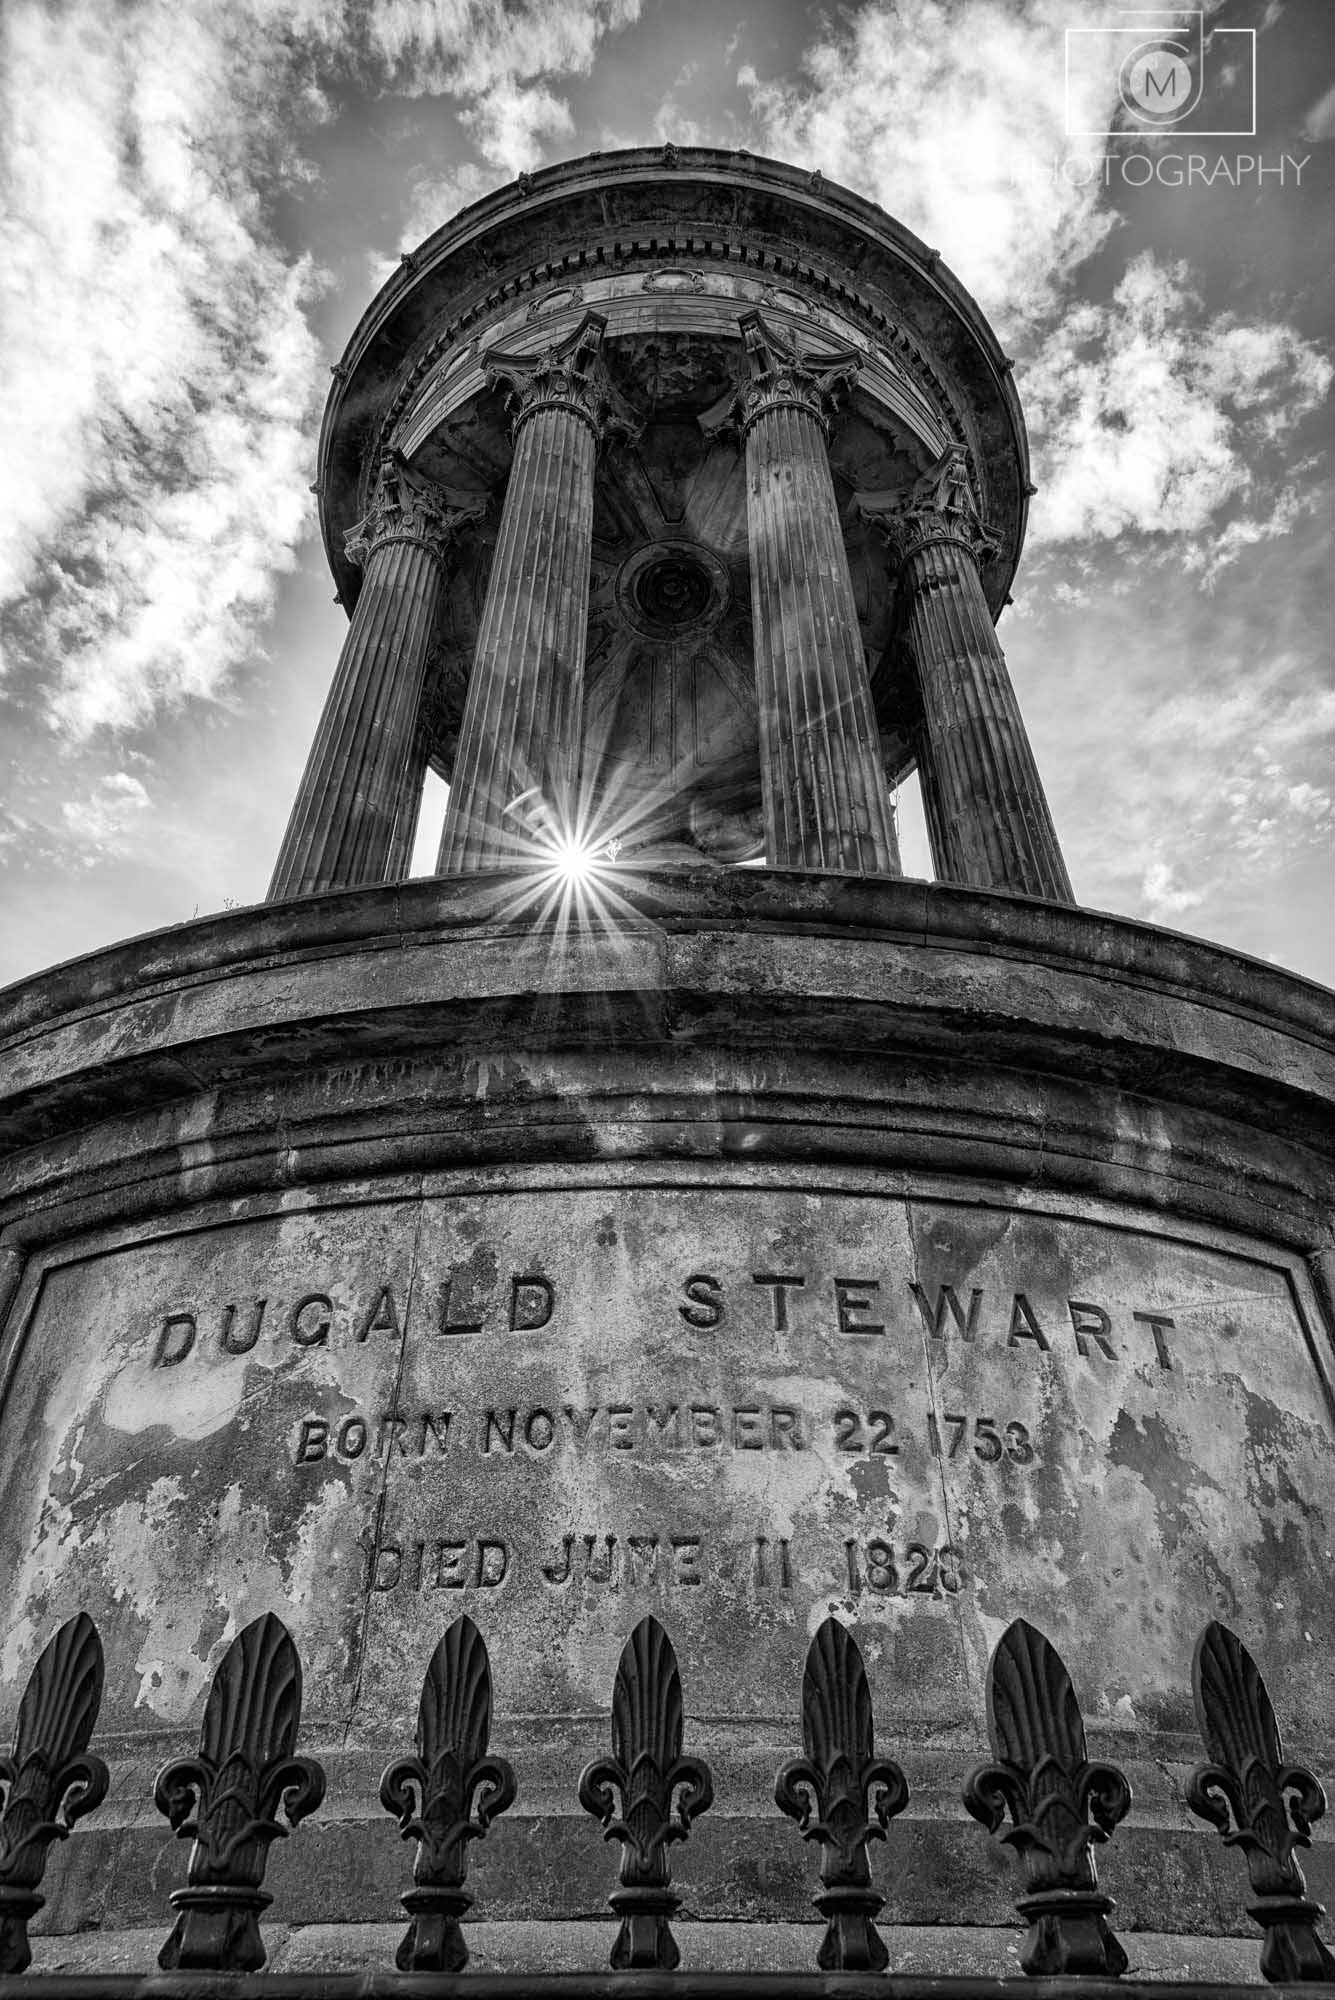 Pamätník Dugald Stewart, Edinburgh -Škótsko